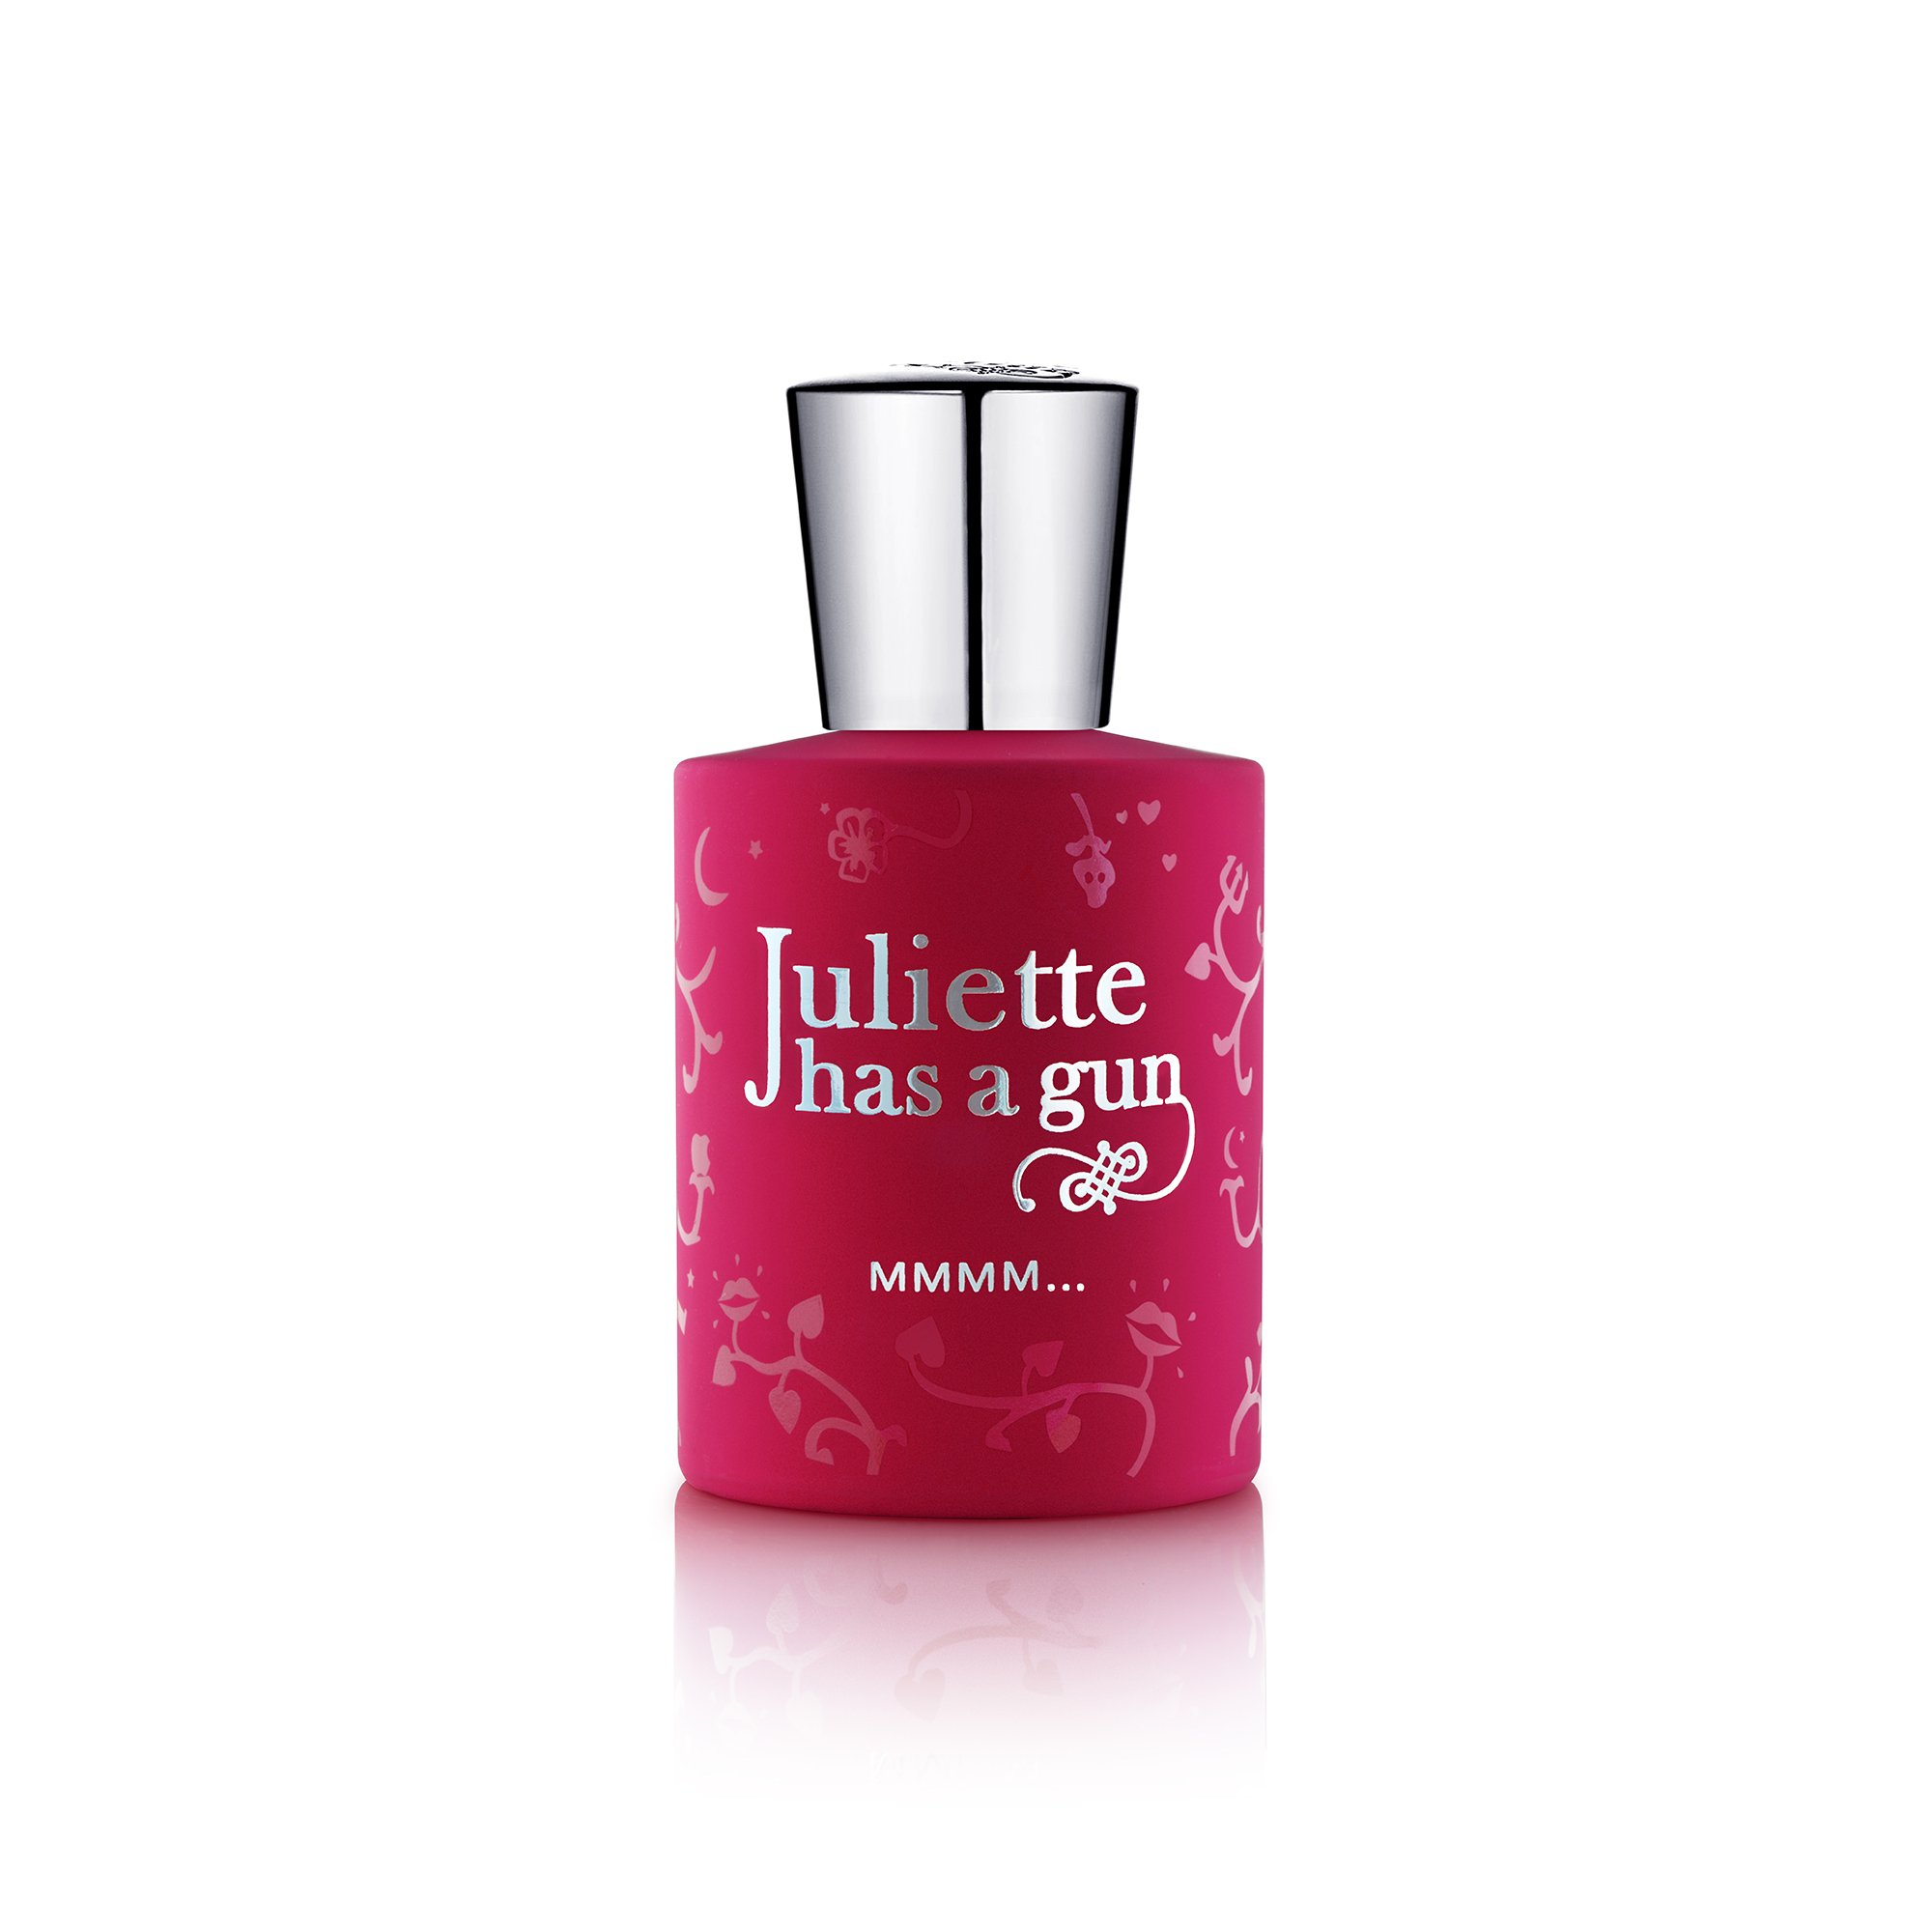 Juliette has a gun Mmmm…… Damen femme/women, Eau de Parfum Spray, 1er Pack (1 x 50 ml)